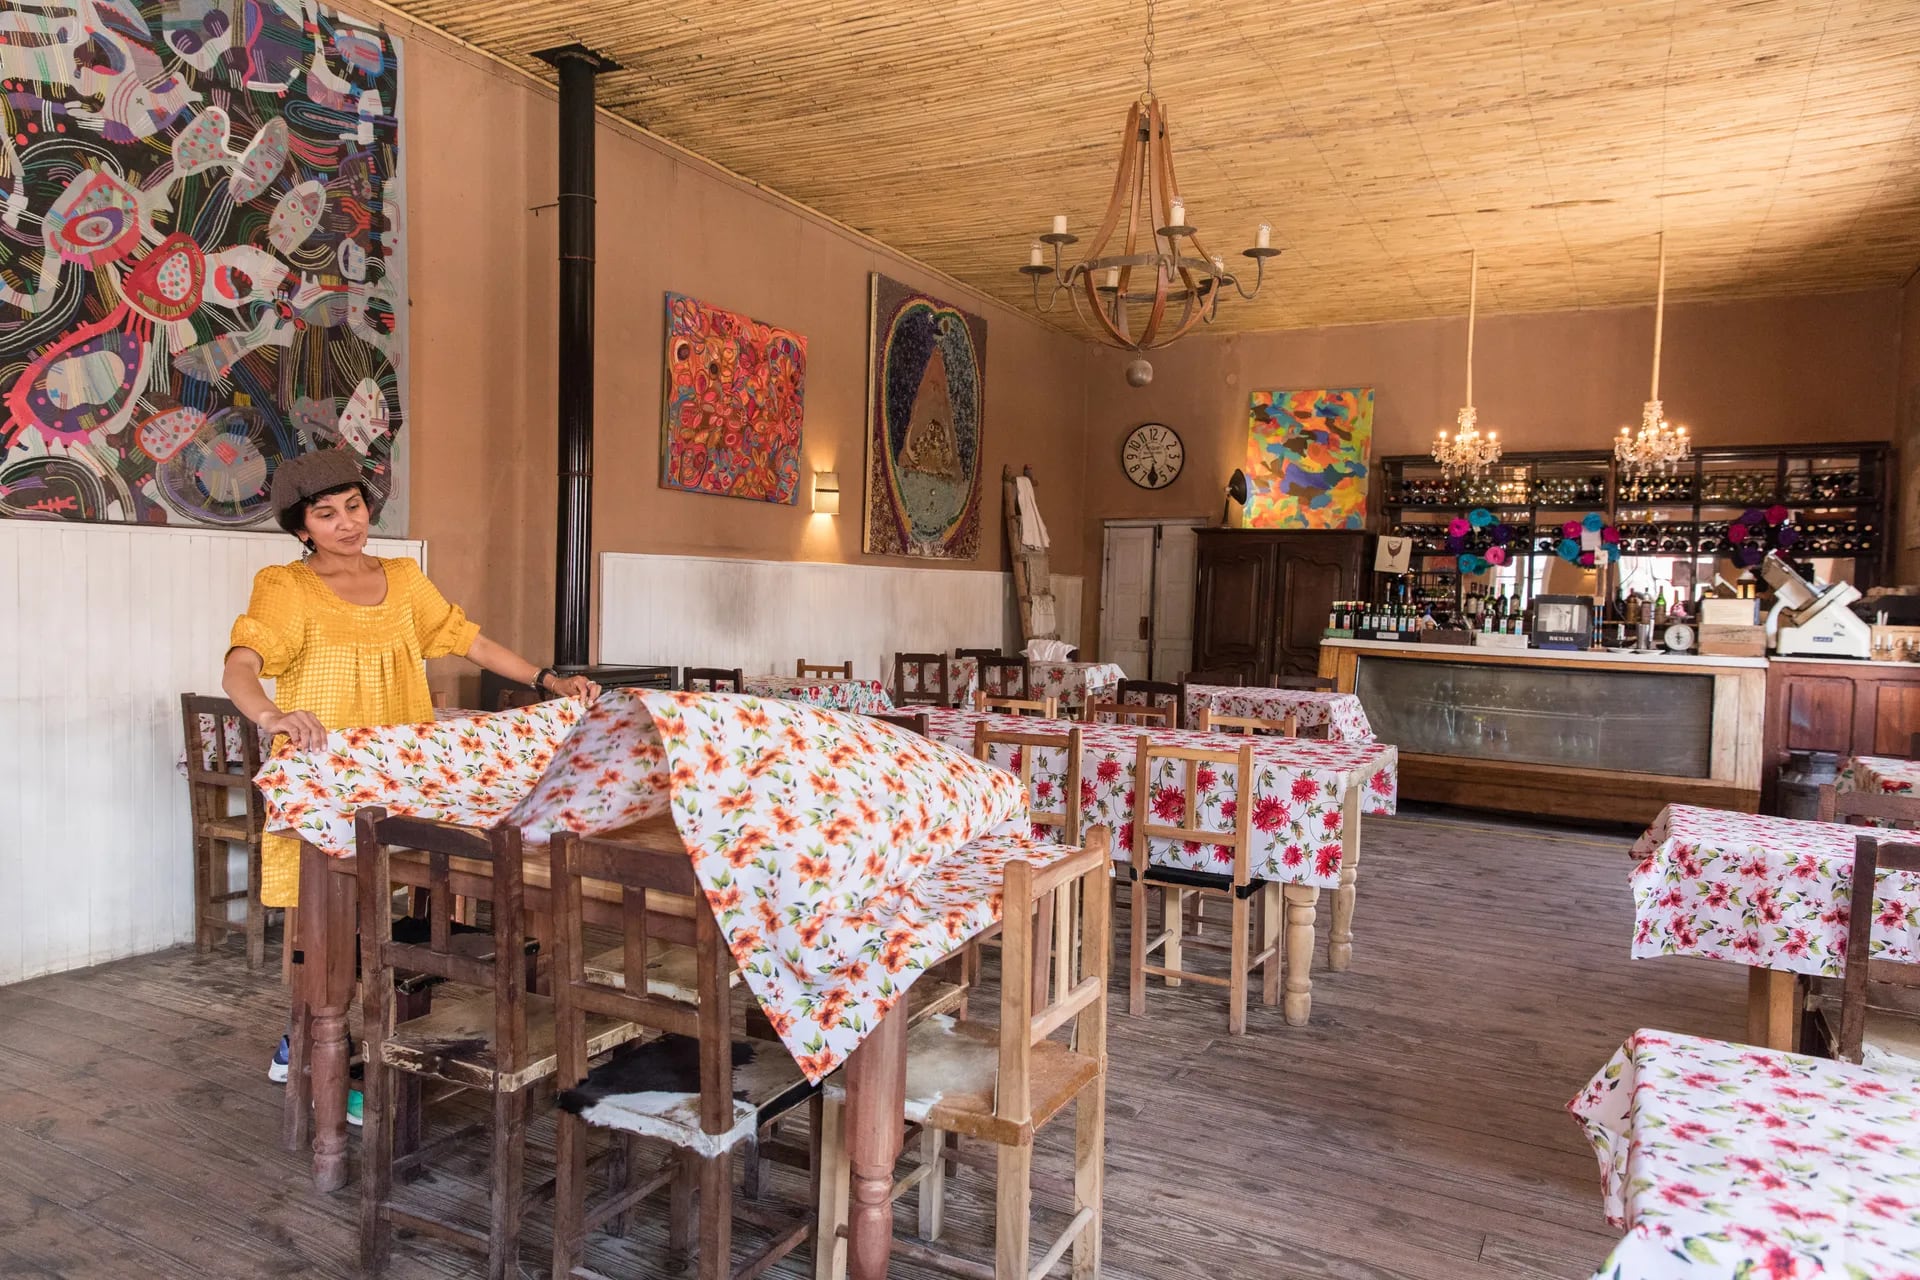 En las paredes del restaurante cuelgan pinturas del artista plástico Fernando Fernández, marido de Florencia. El ambiente y los sabores ofrecidos crean una experiencia multisensorial.